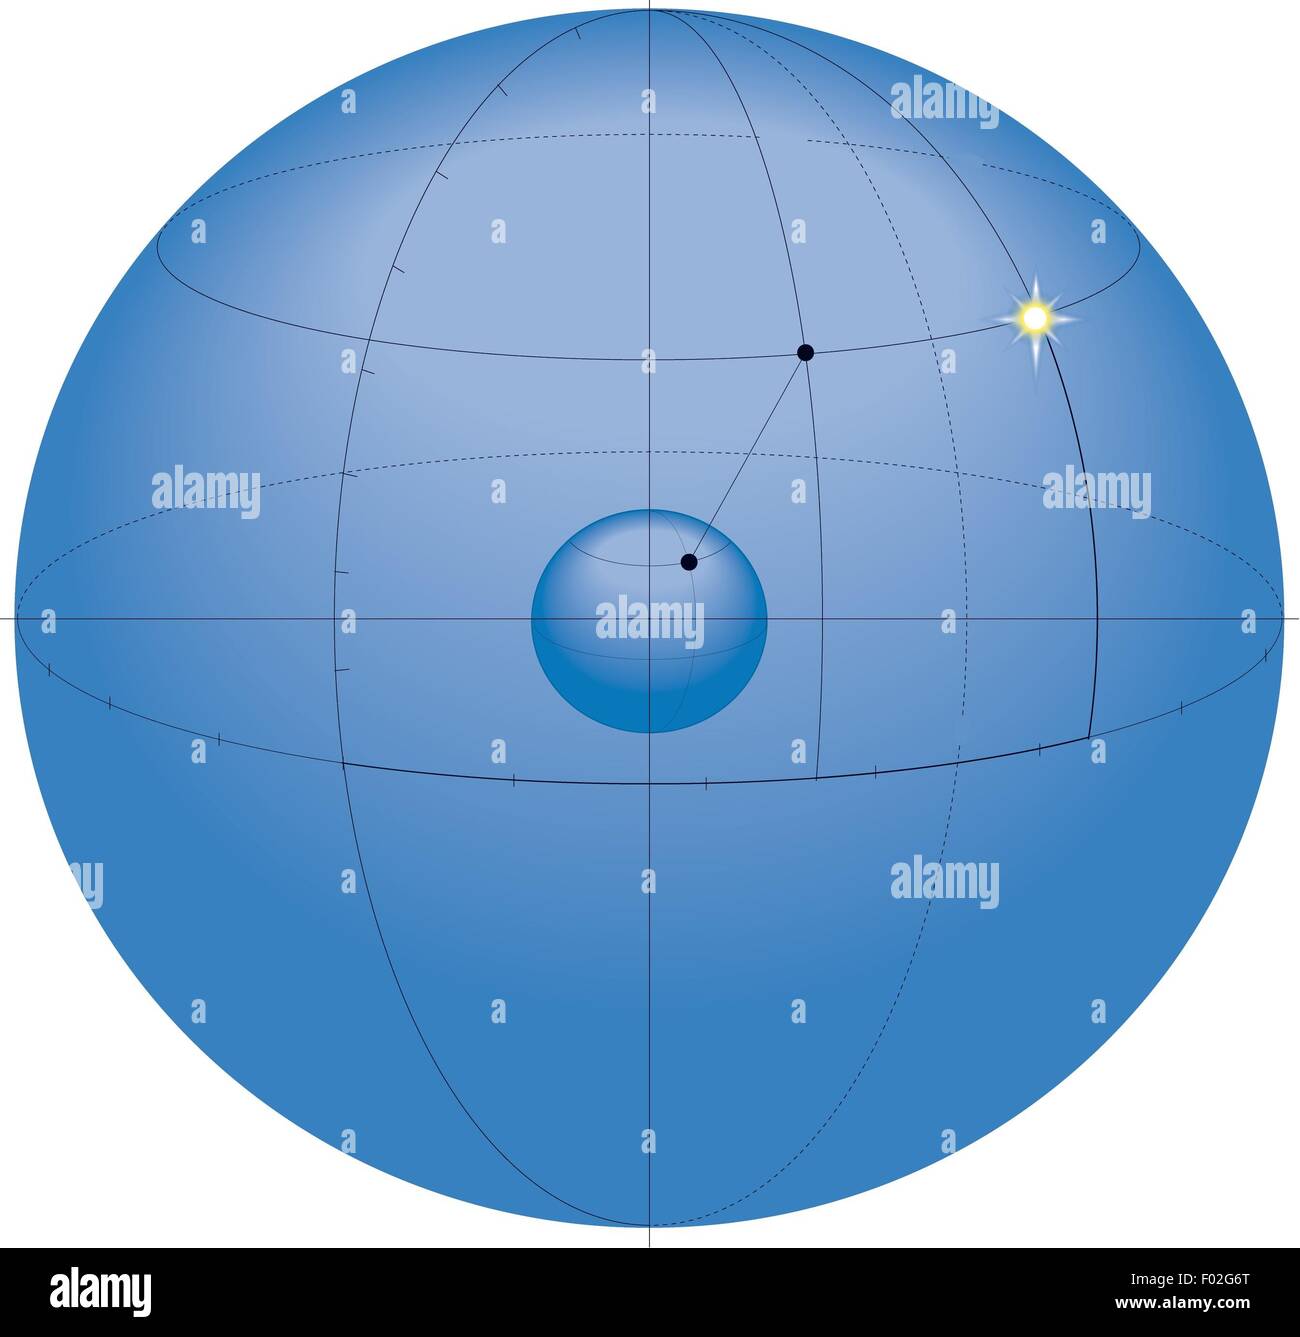 Astronomia - celeste di sistemi di coordinate. Sistema equatoriale. Schema colori Foto Stock